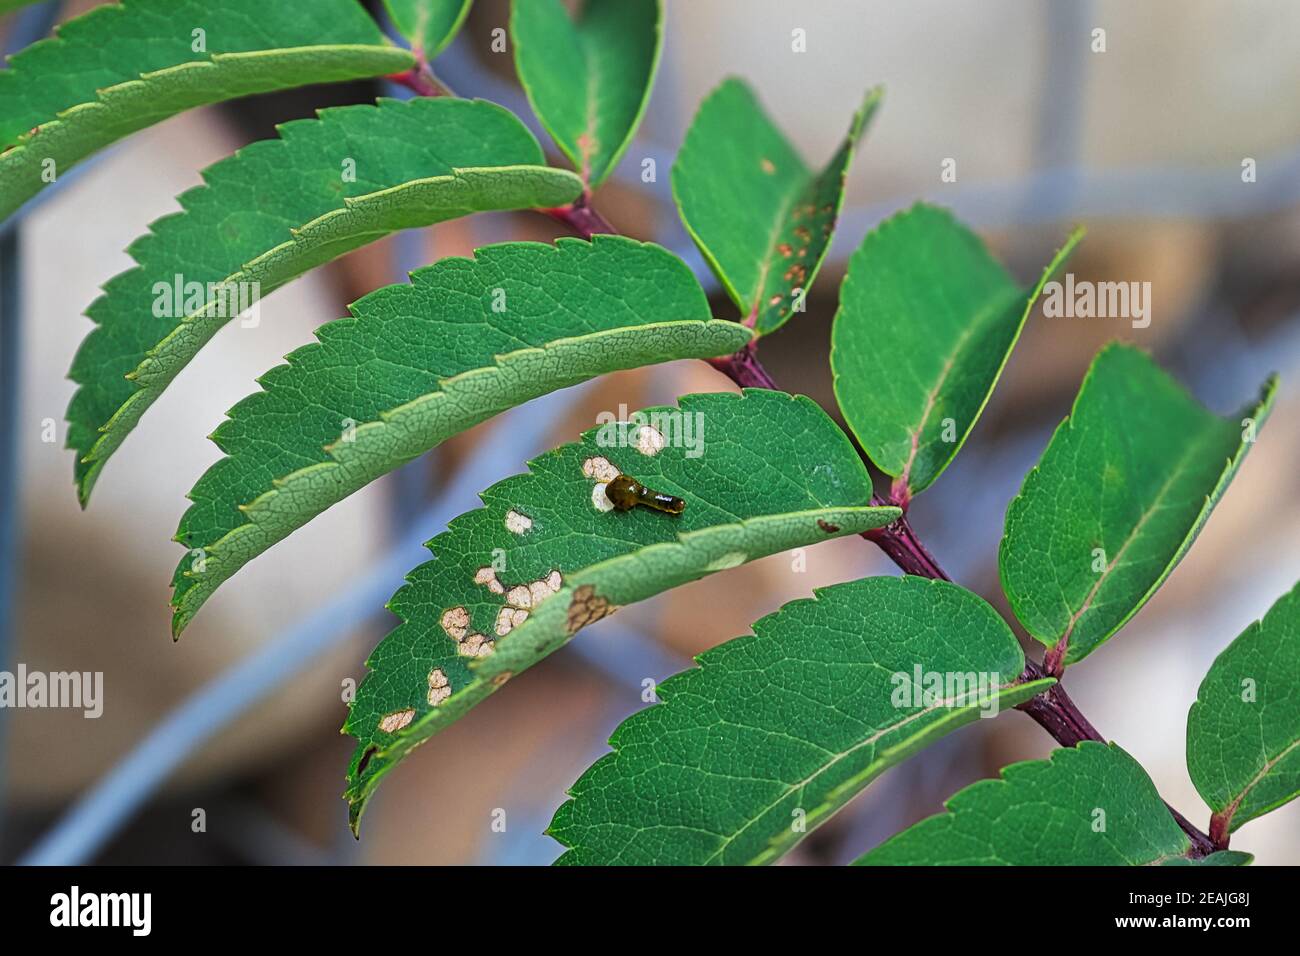 Closeup of a small pear slug damaging leaves Stock Photo